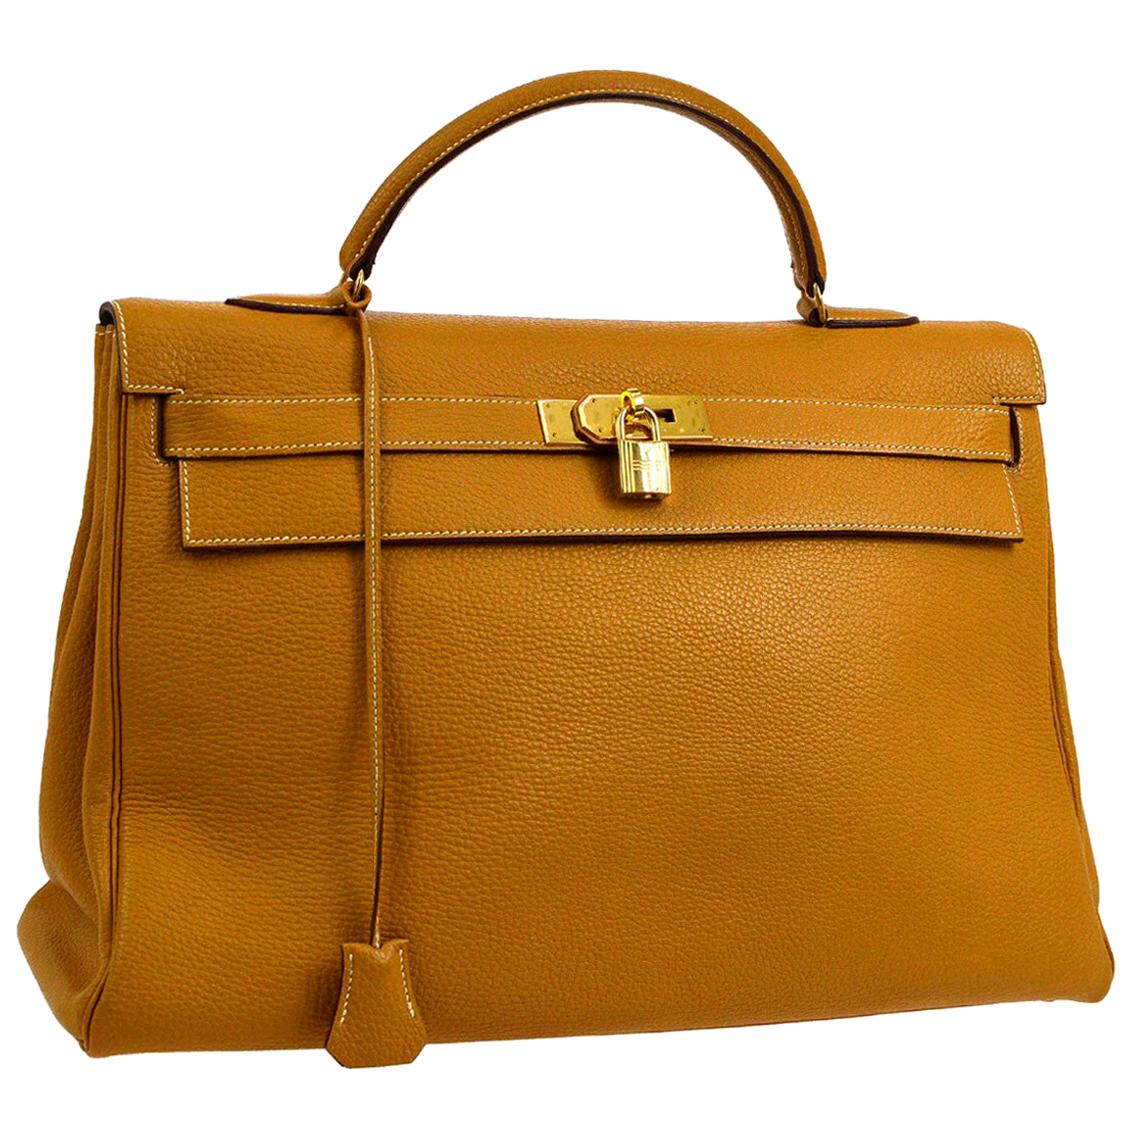 Hermes Kelly 40 Mustard Leather Top Handle Satchel Carryall Tote Flap Bag